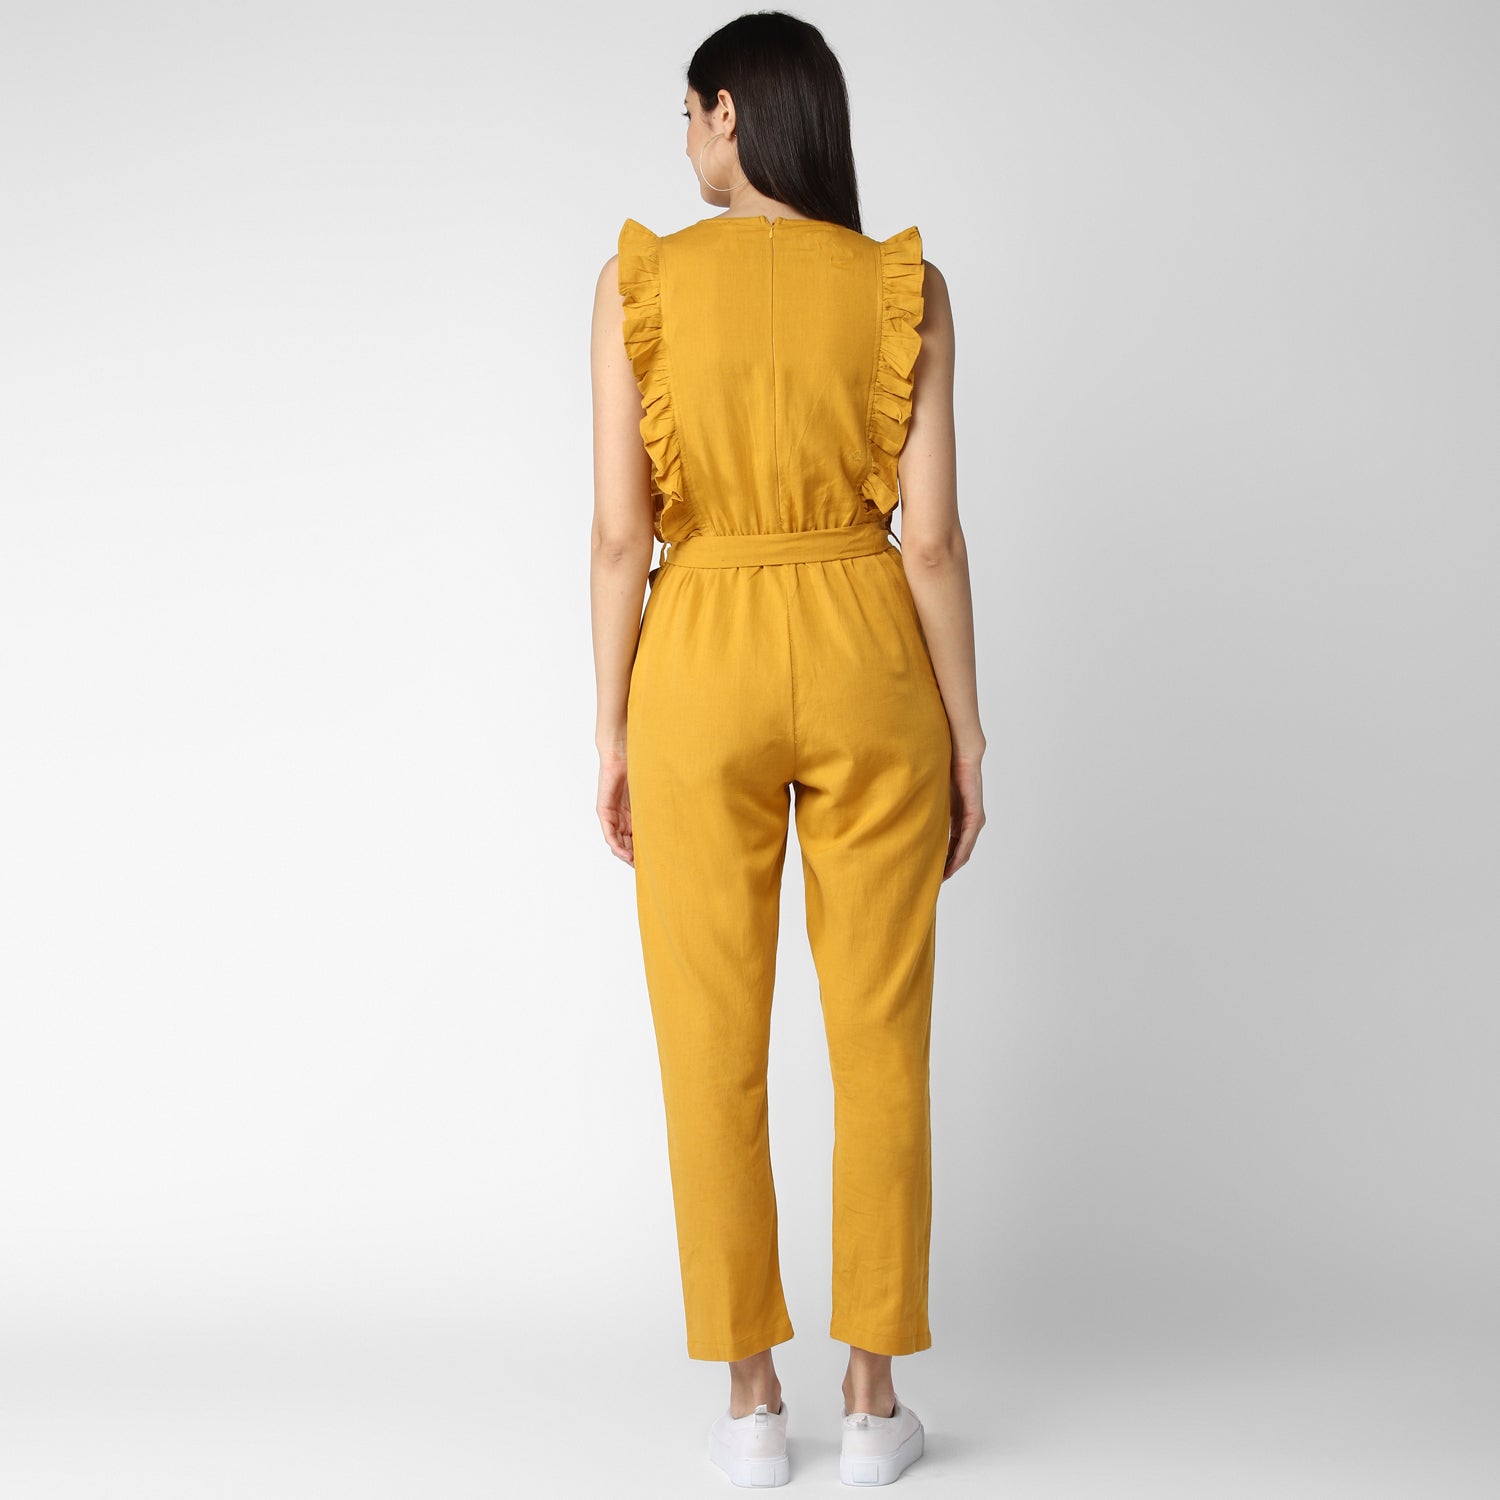 Women's Cotton Linen Yellow Jumpsuit - StyleStone